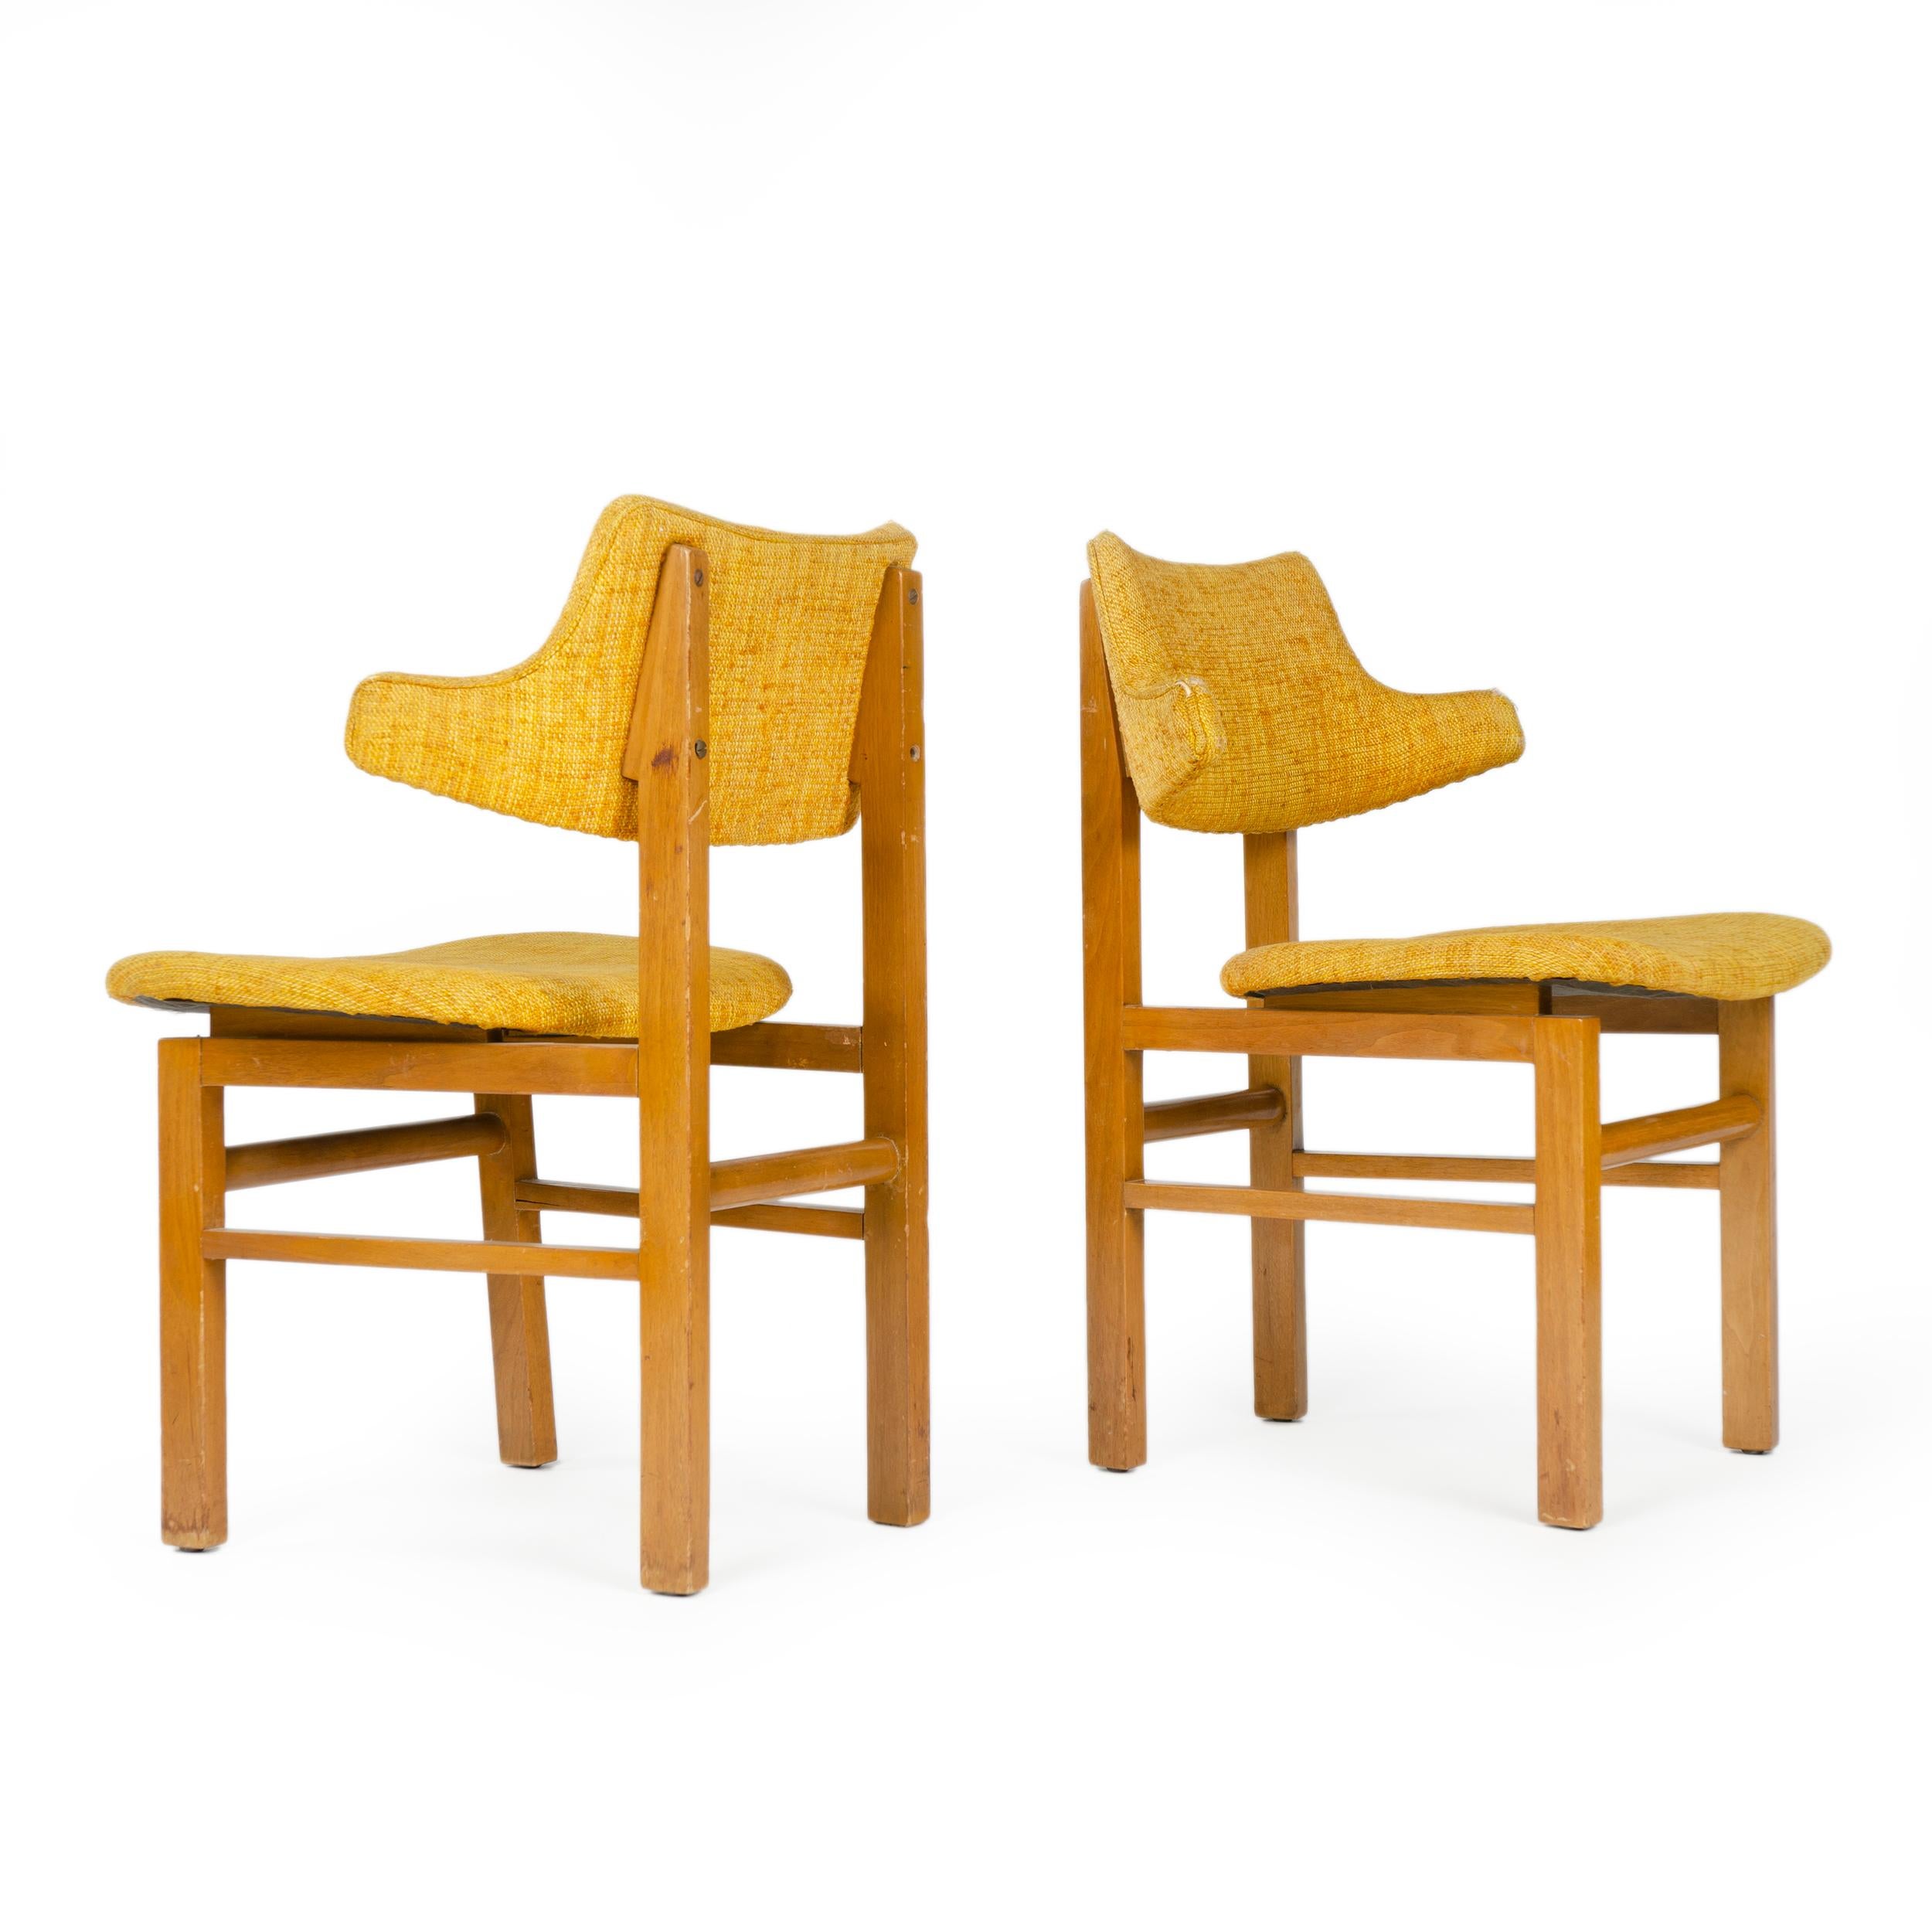 Ein Satz Esszimmerstühle mit Rahmen aus Nussbaumholz, die schwebende laminierte Sitze und skulpturale Rückenlehnen tragen, beide mit Vintage-Polsterung bezogen. Entworfen 1953 als Bestandteil der neu eingeführten Career Group, produziert bis 1957.